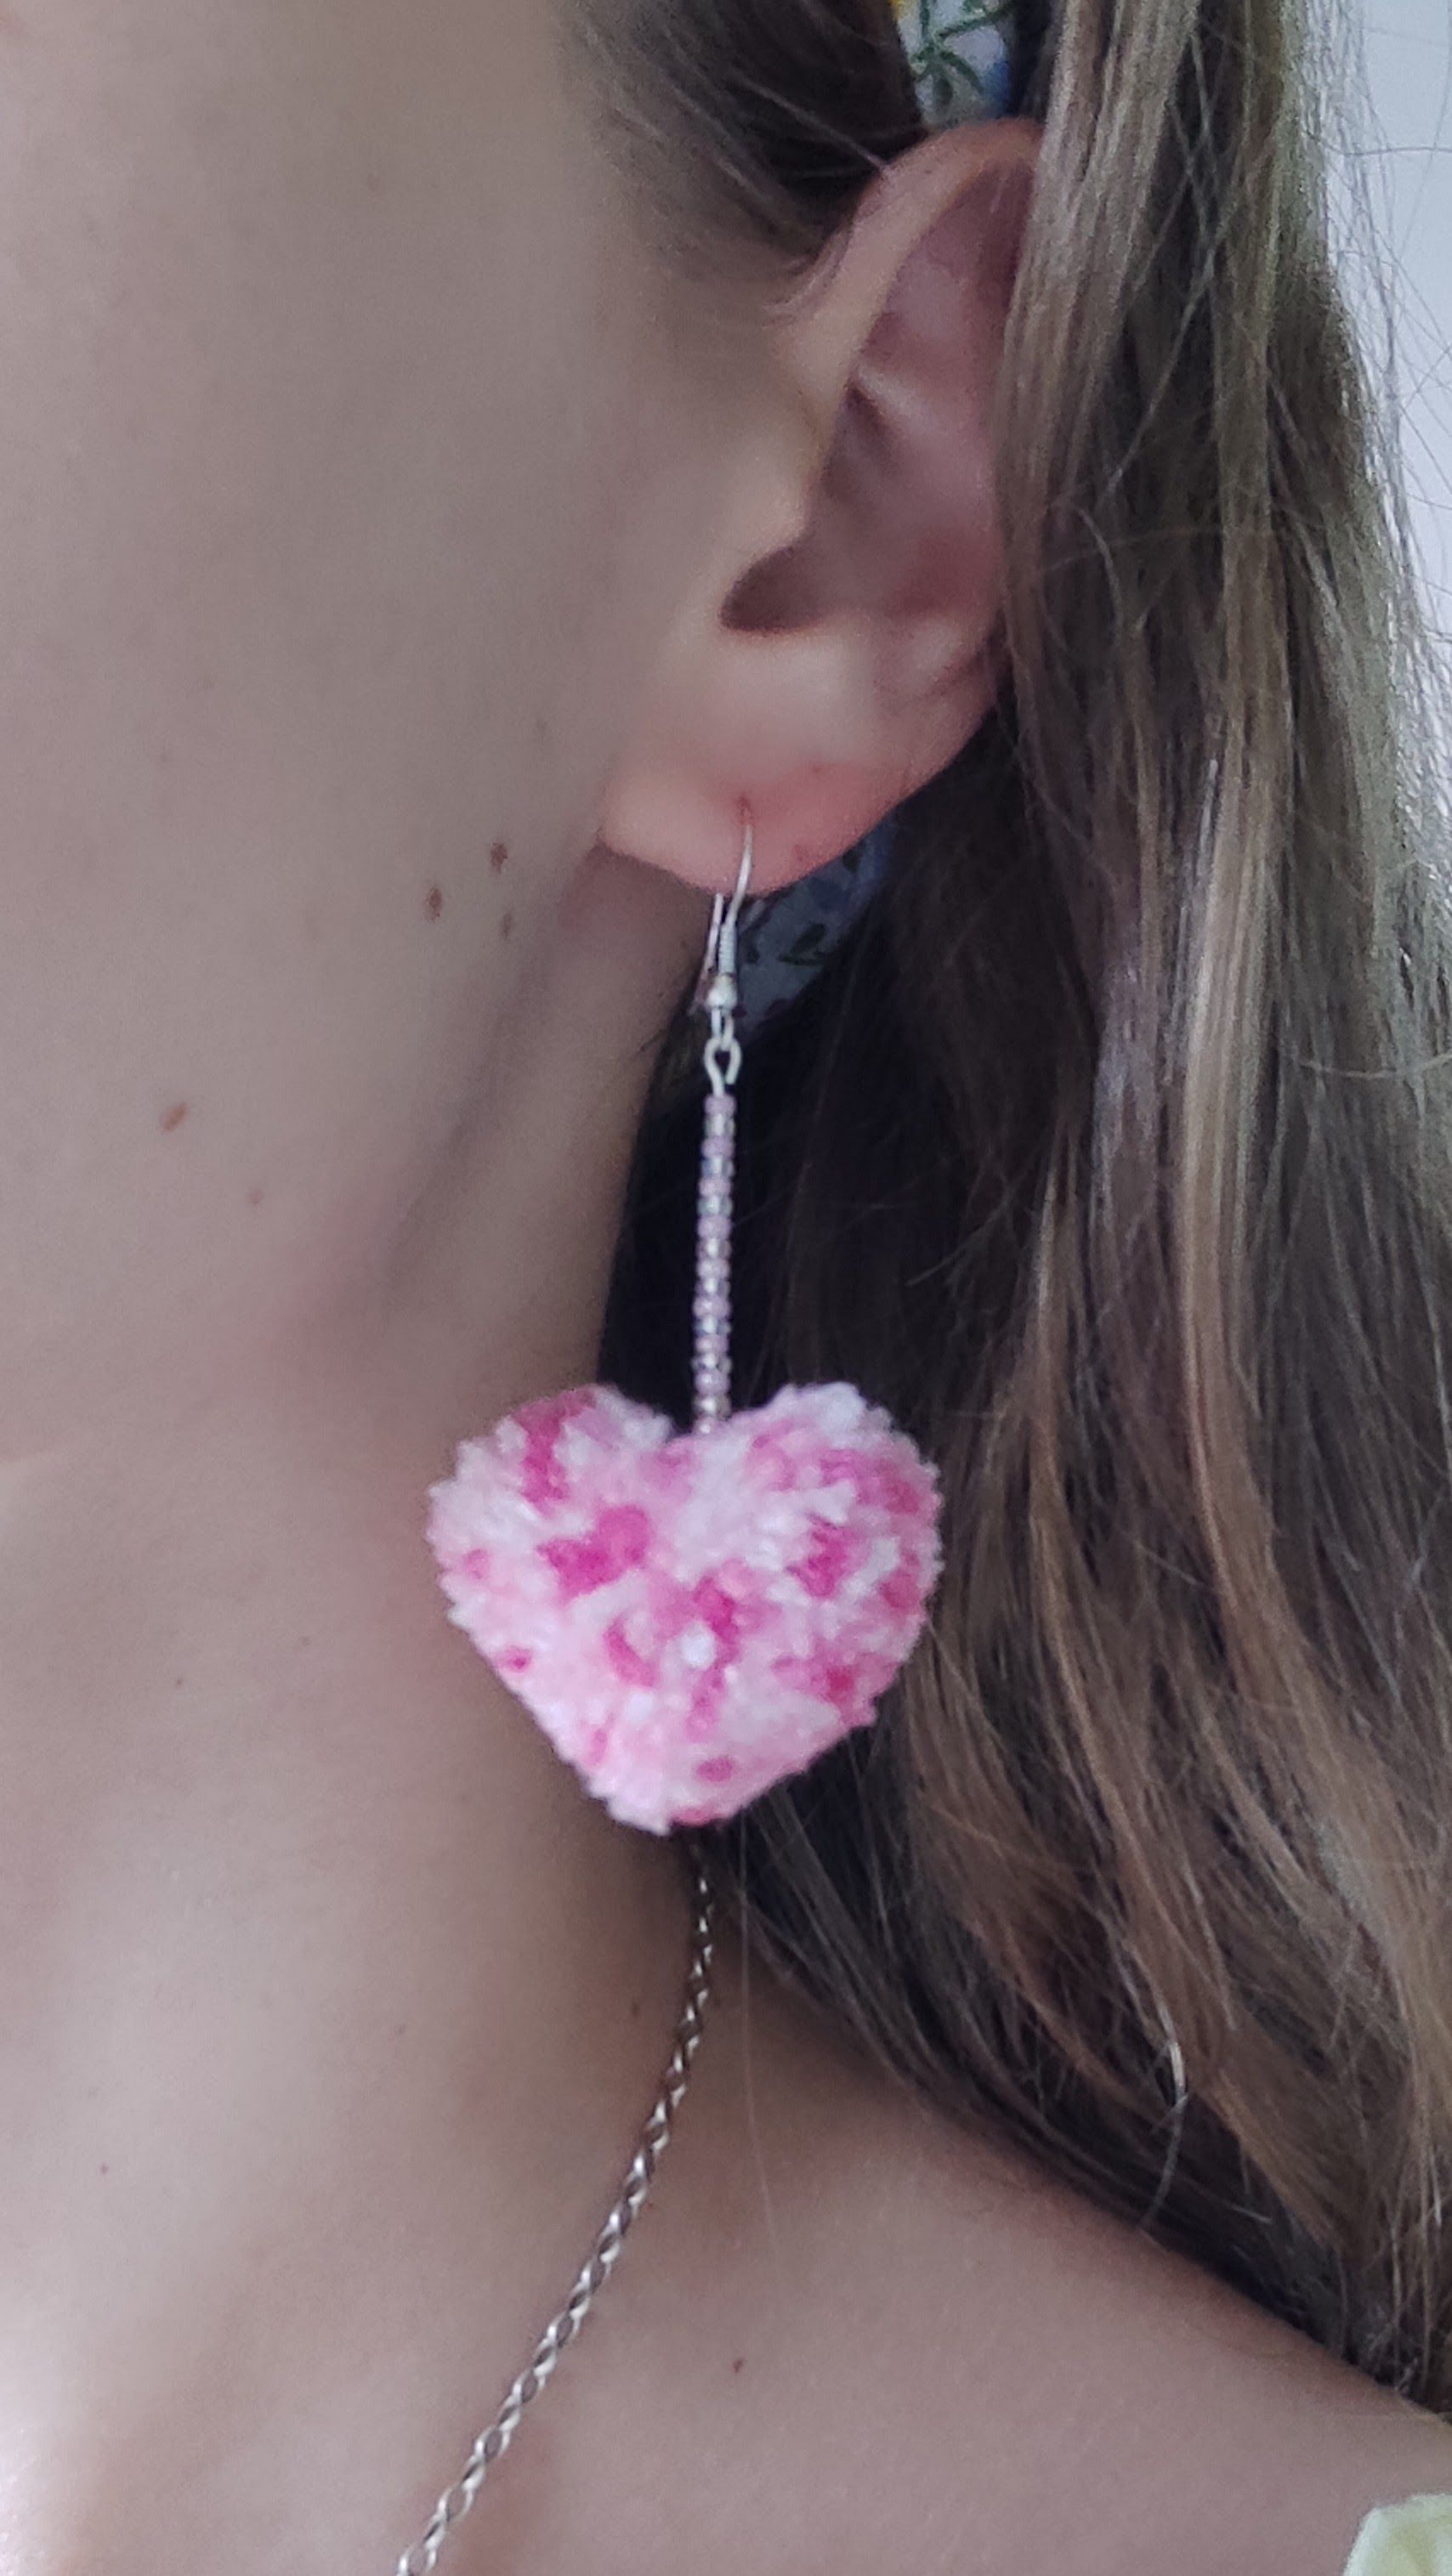 Heart shaped pom pom earrings on 925 sterling silver earring hooks